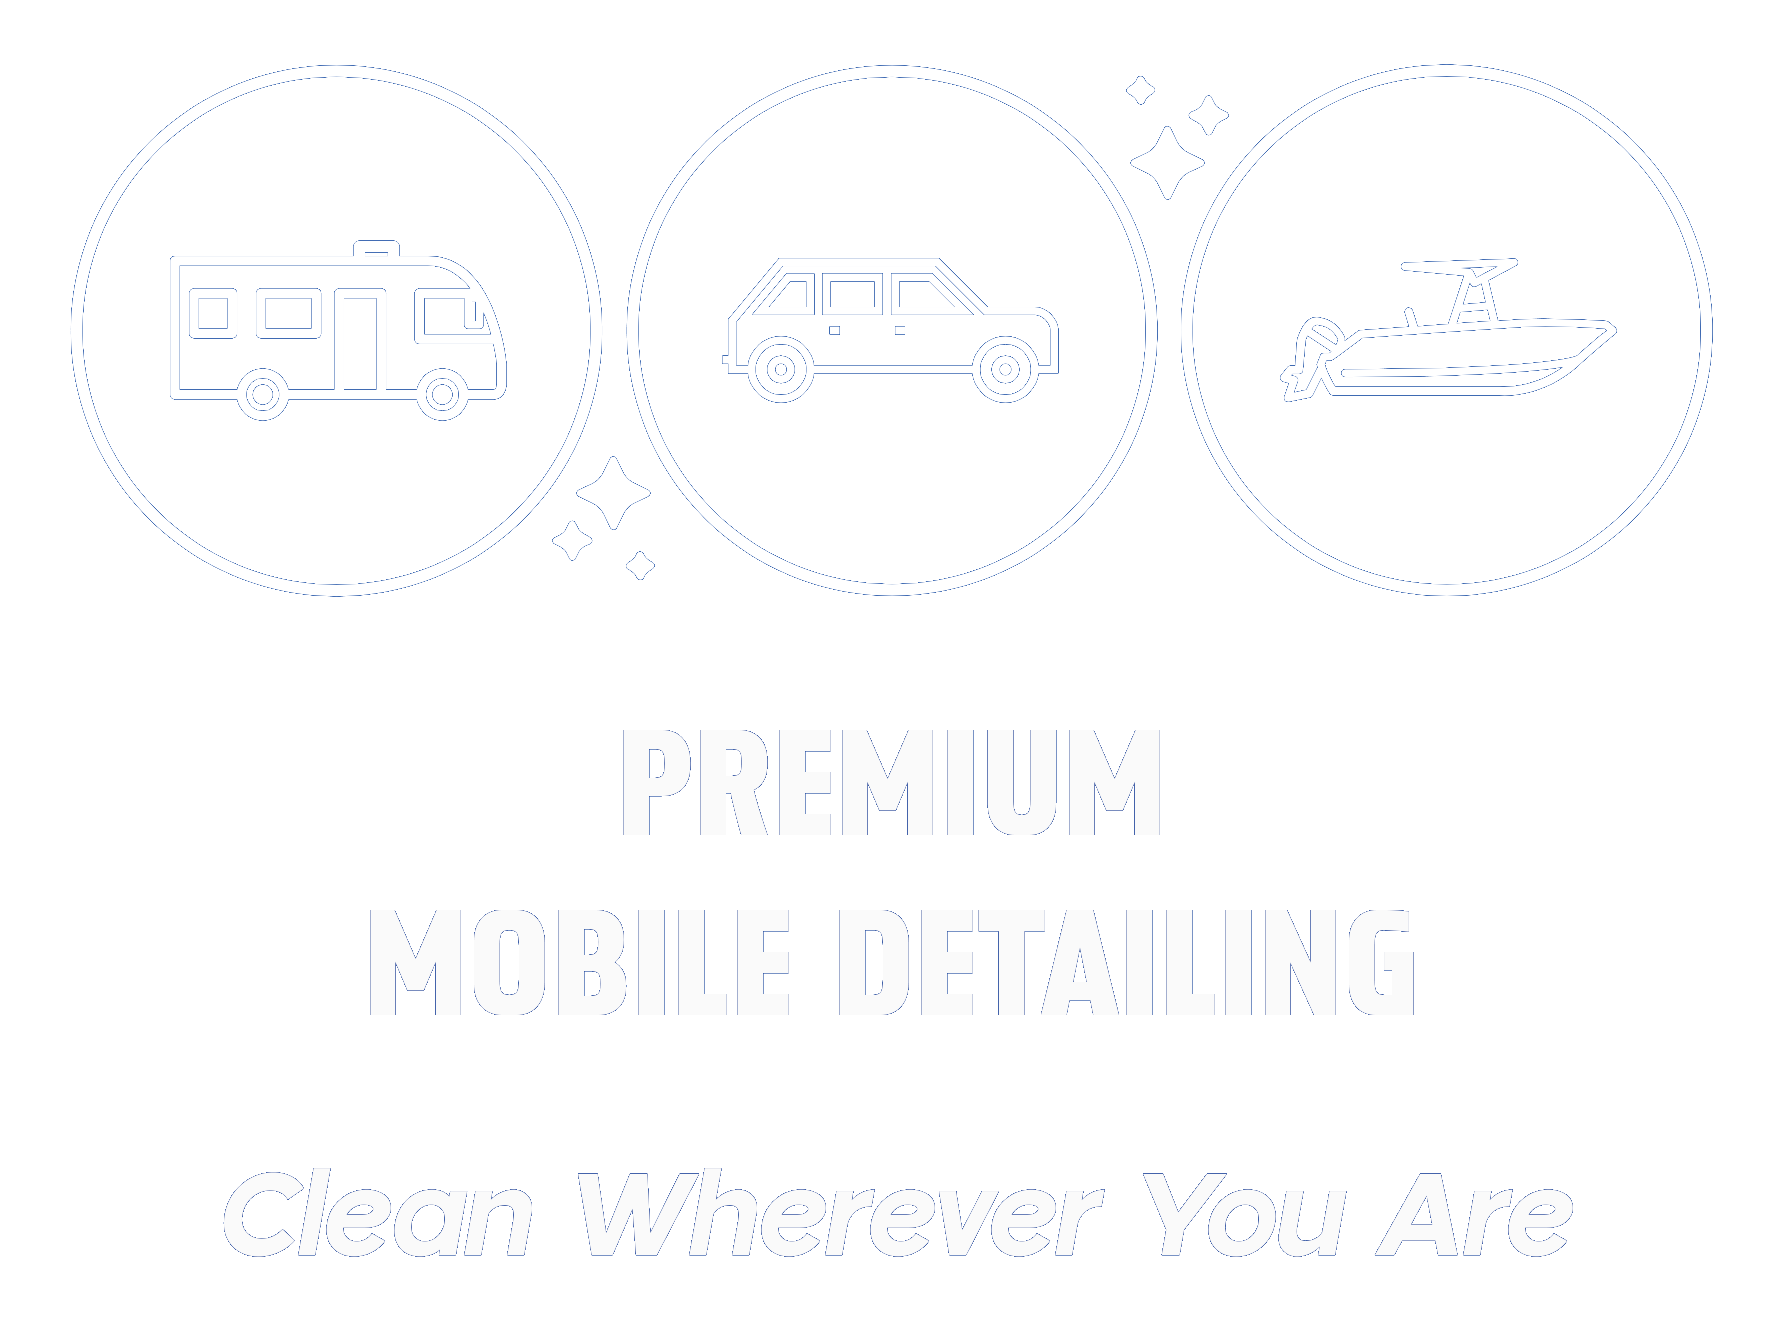 Premium Mobile Detailing